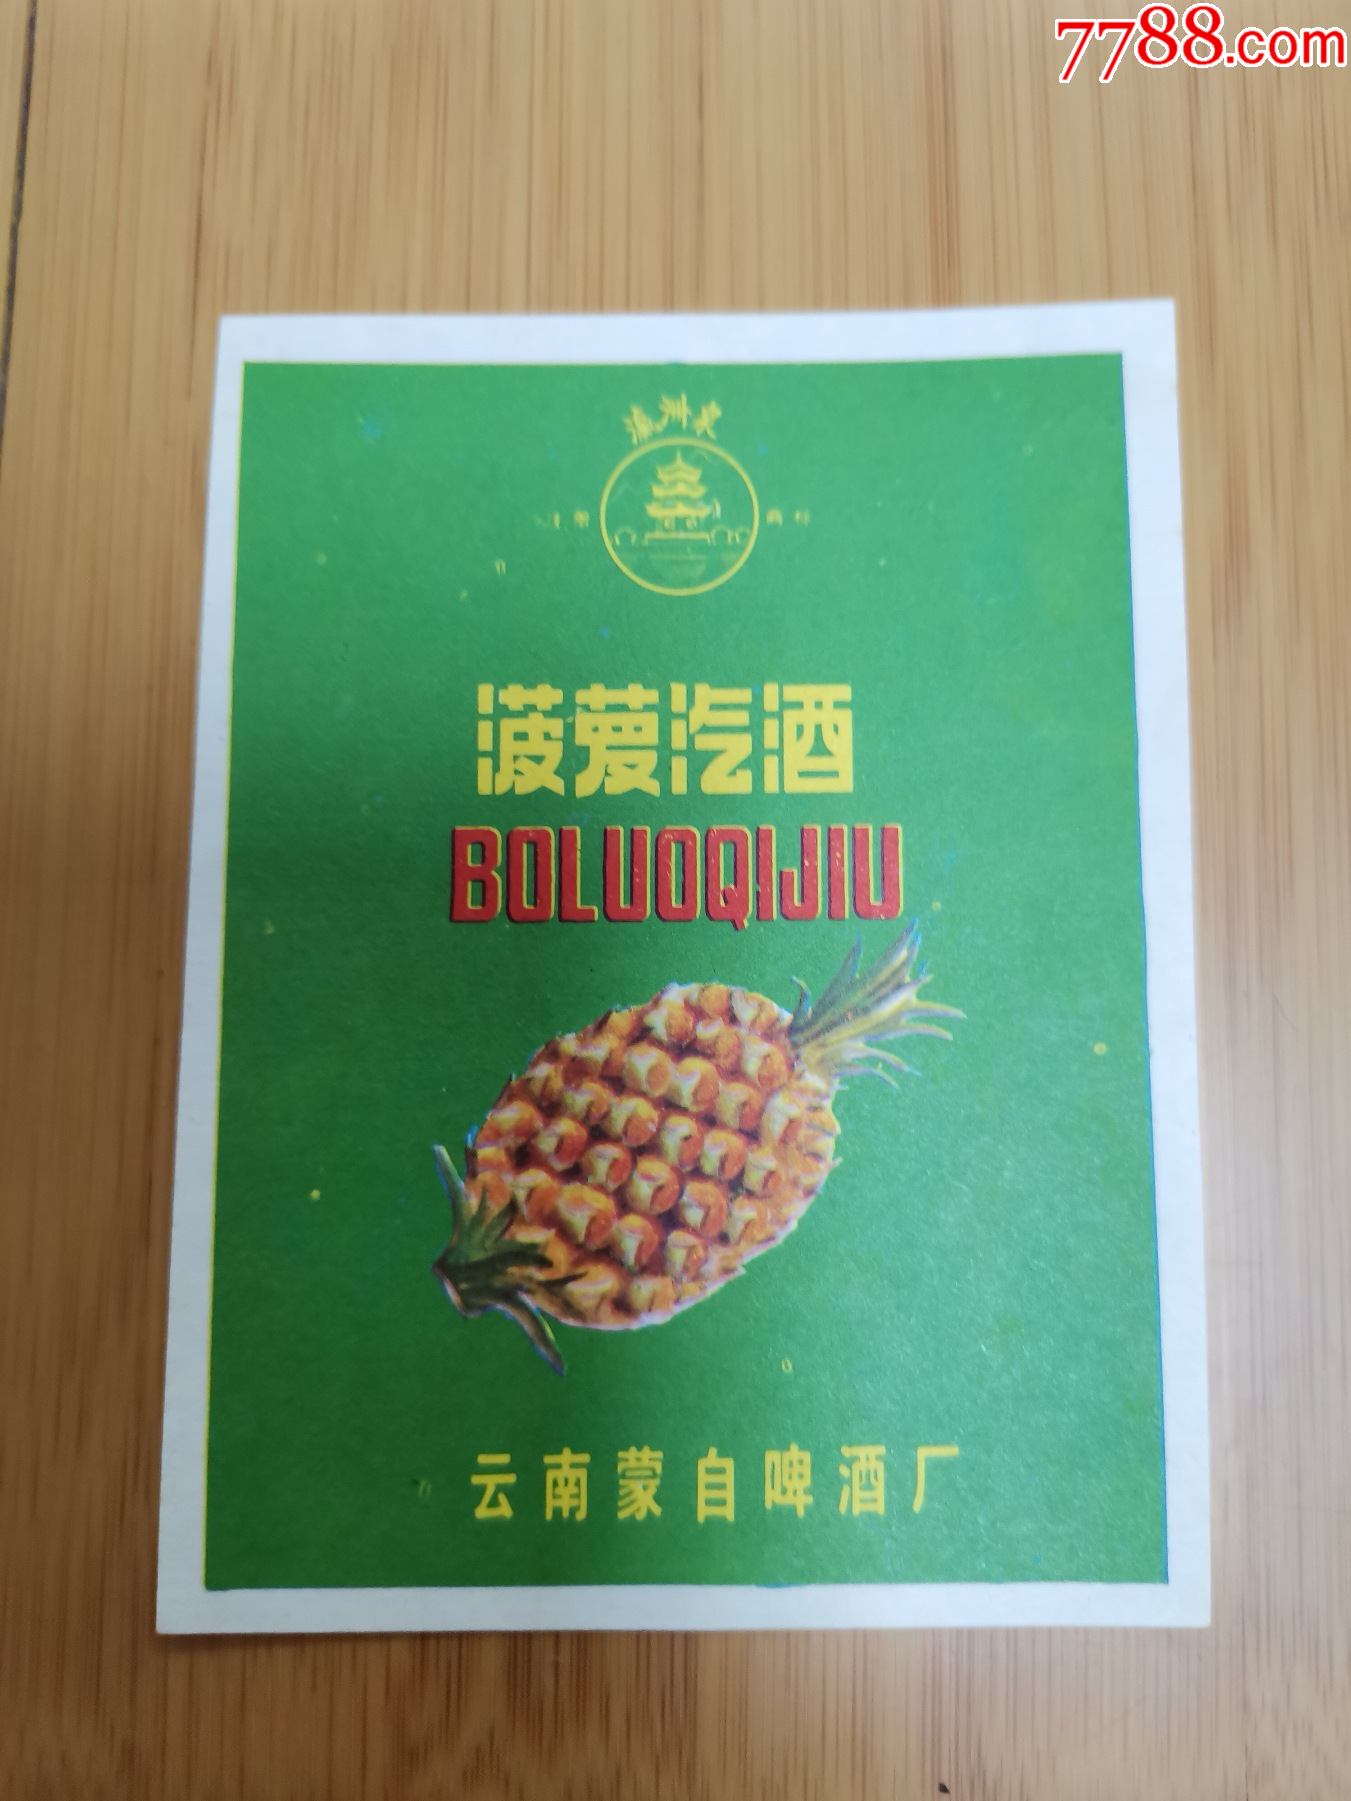 菠萝汽酒商标(云南蒙自啤酒厂)